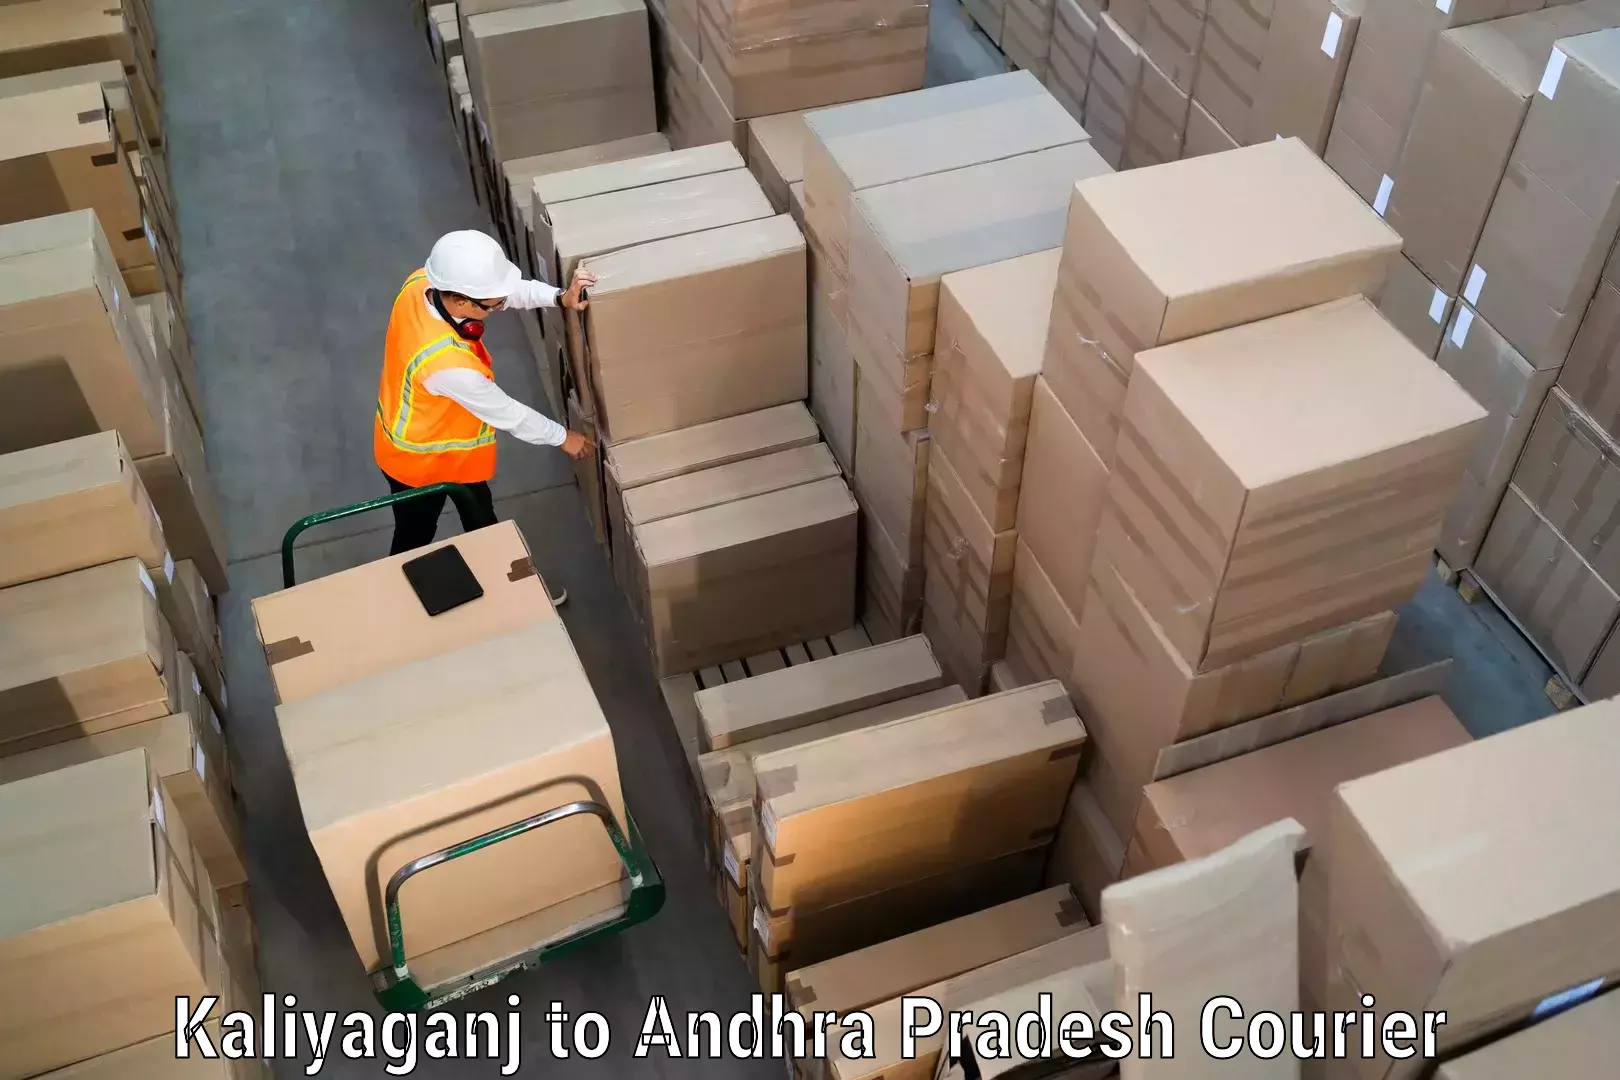 High-speed parcel service Kaliyaganj to Chirala